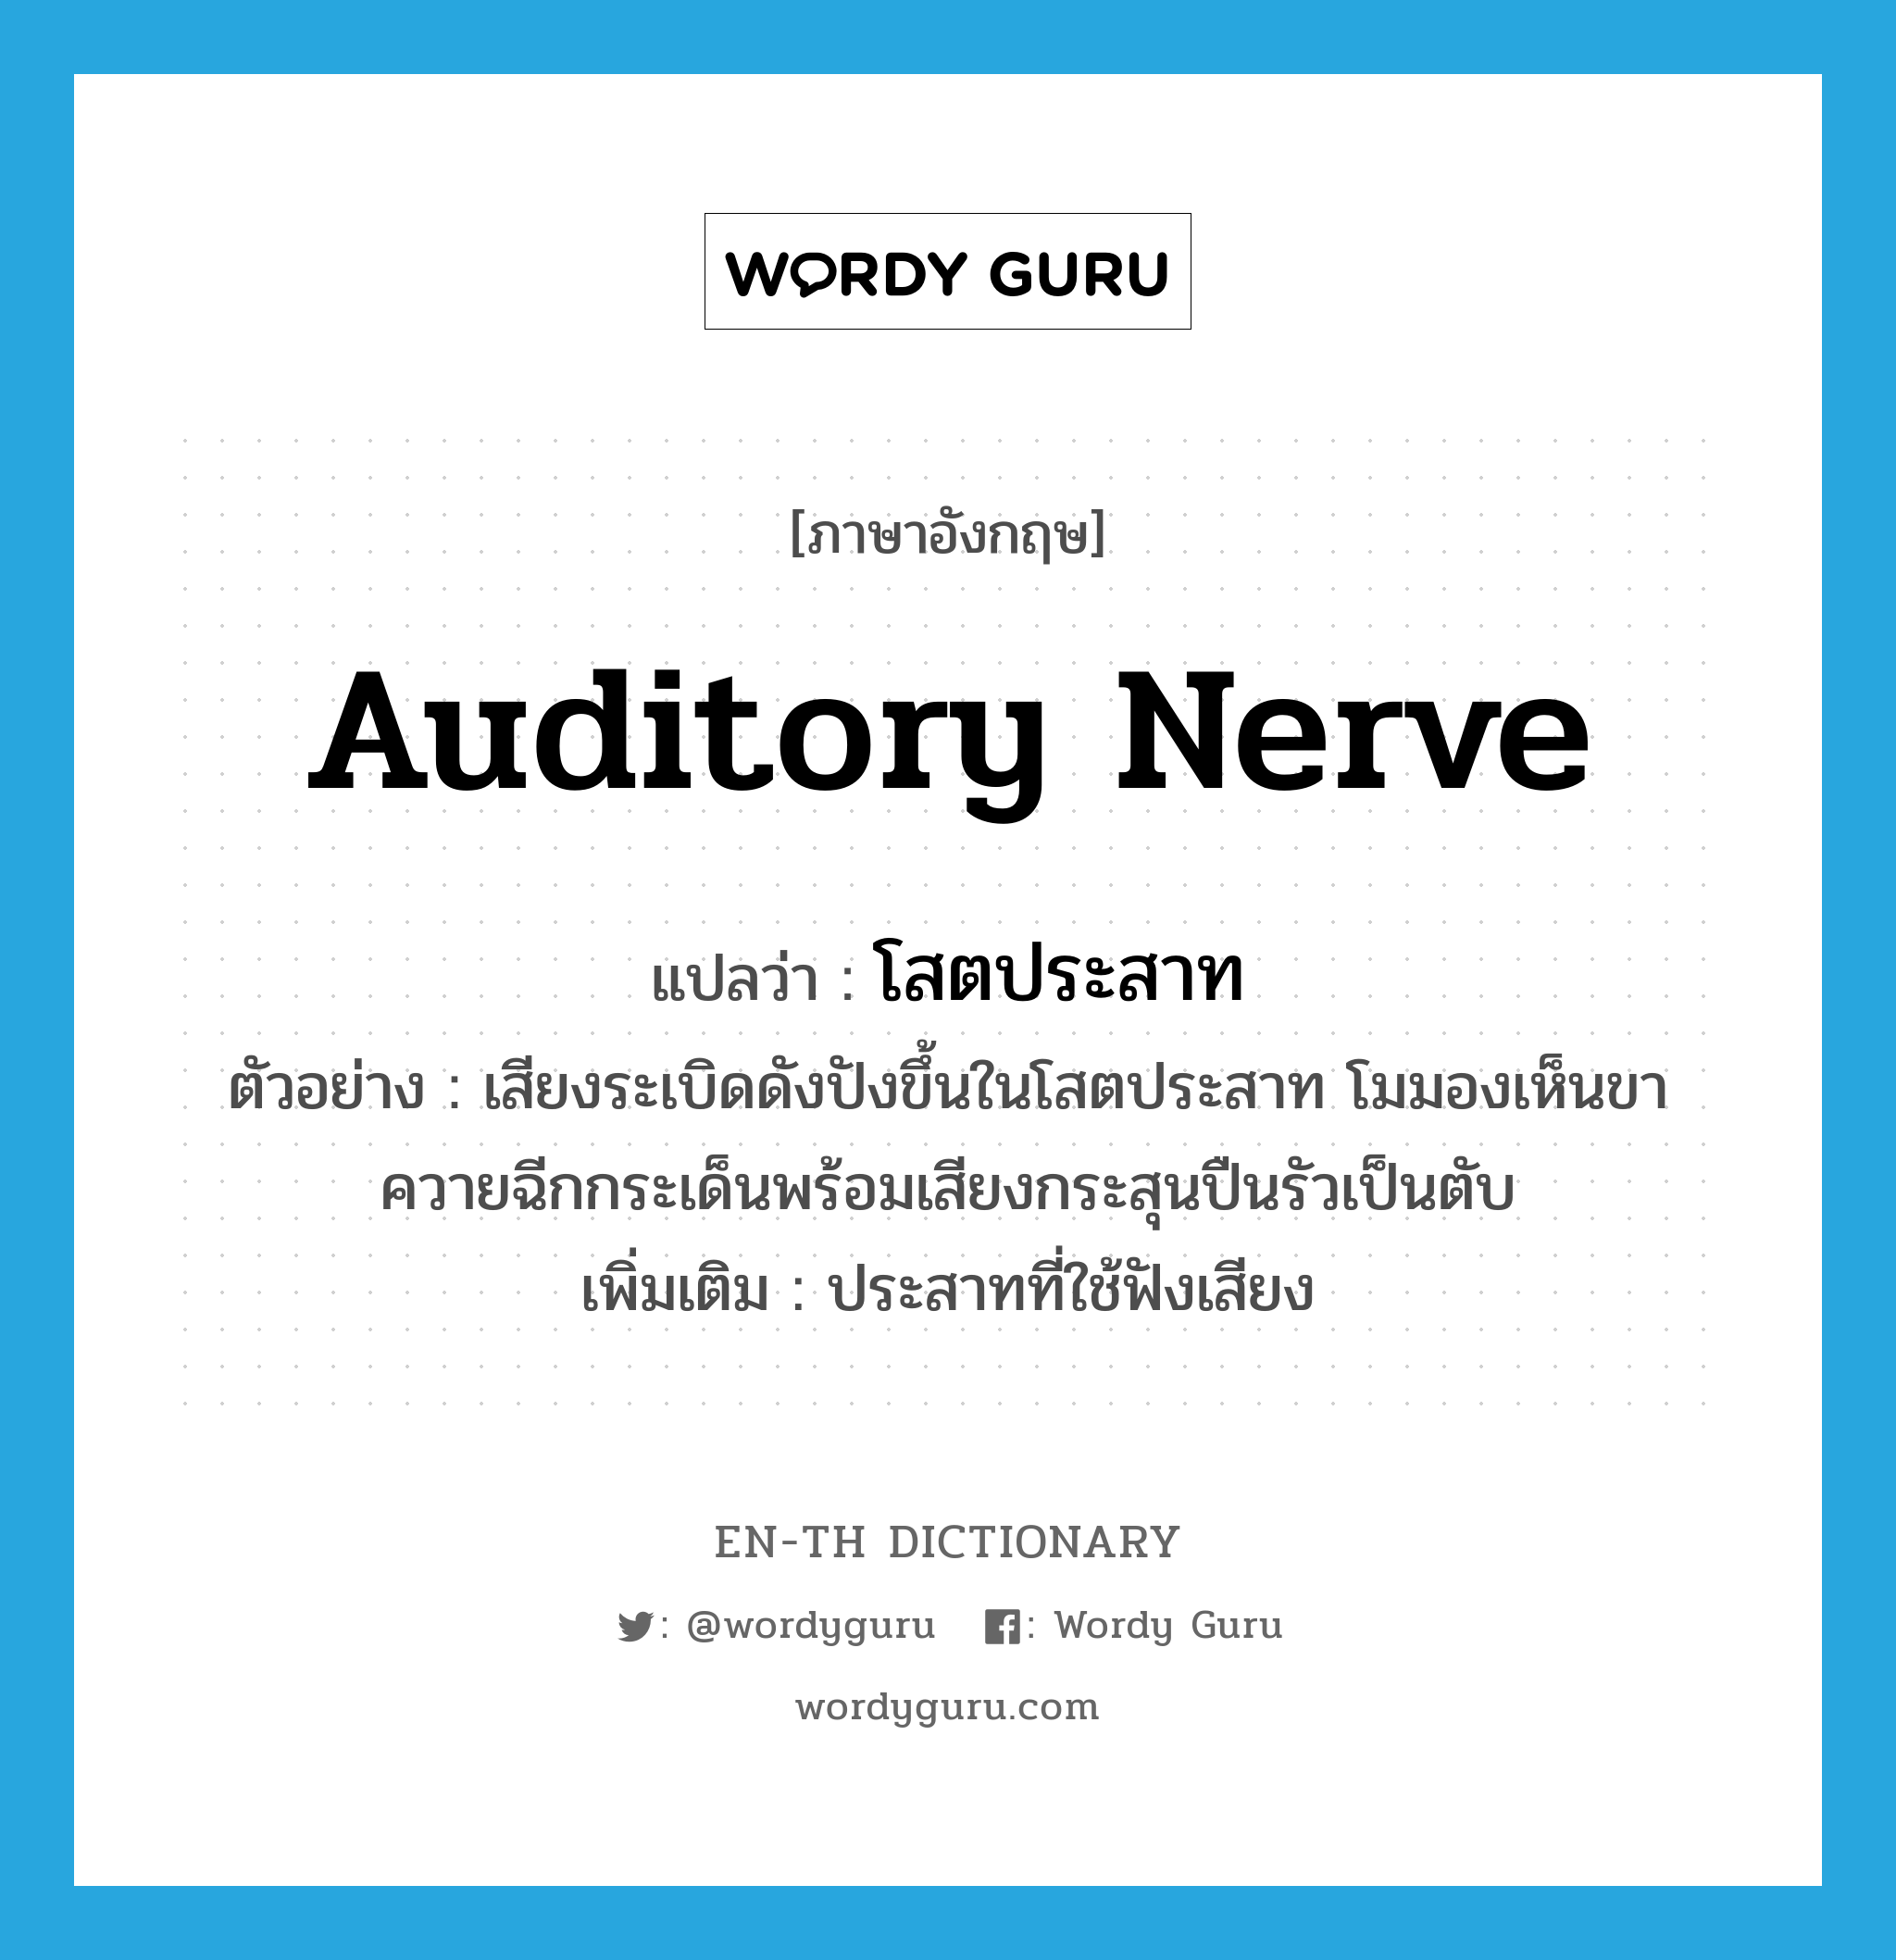 auditory nerve แปลว่า?, คำศัพท์ภาษาอังกฤษ auditory nerve แปลว่า โสตประสาท ประเภท N ตัวอย่าง เสียงระเบิดดังปังขึ้นในโสตประสาท โมมองเห็นขาควายฉีกกระเด็นพร้อมเสียงกระสุนปืนรัวเป็นตับ เพิ่มเติม ประสาทที่ใช้ฟังเสียง หมวด N